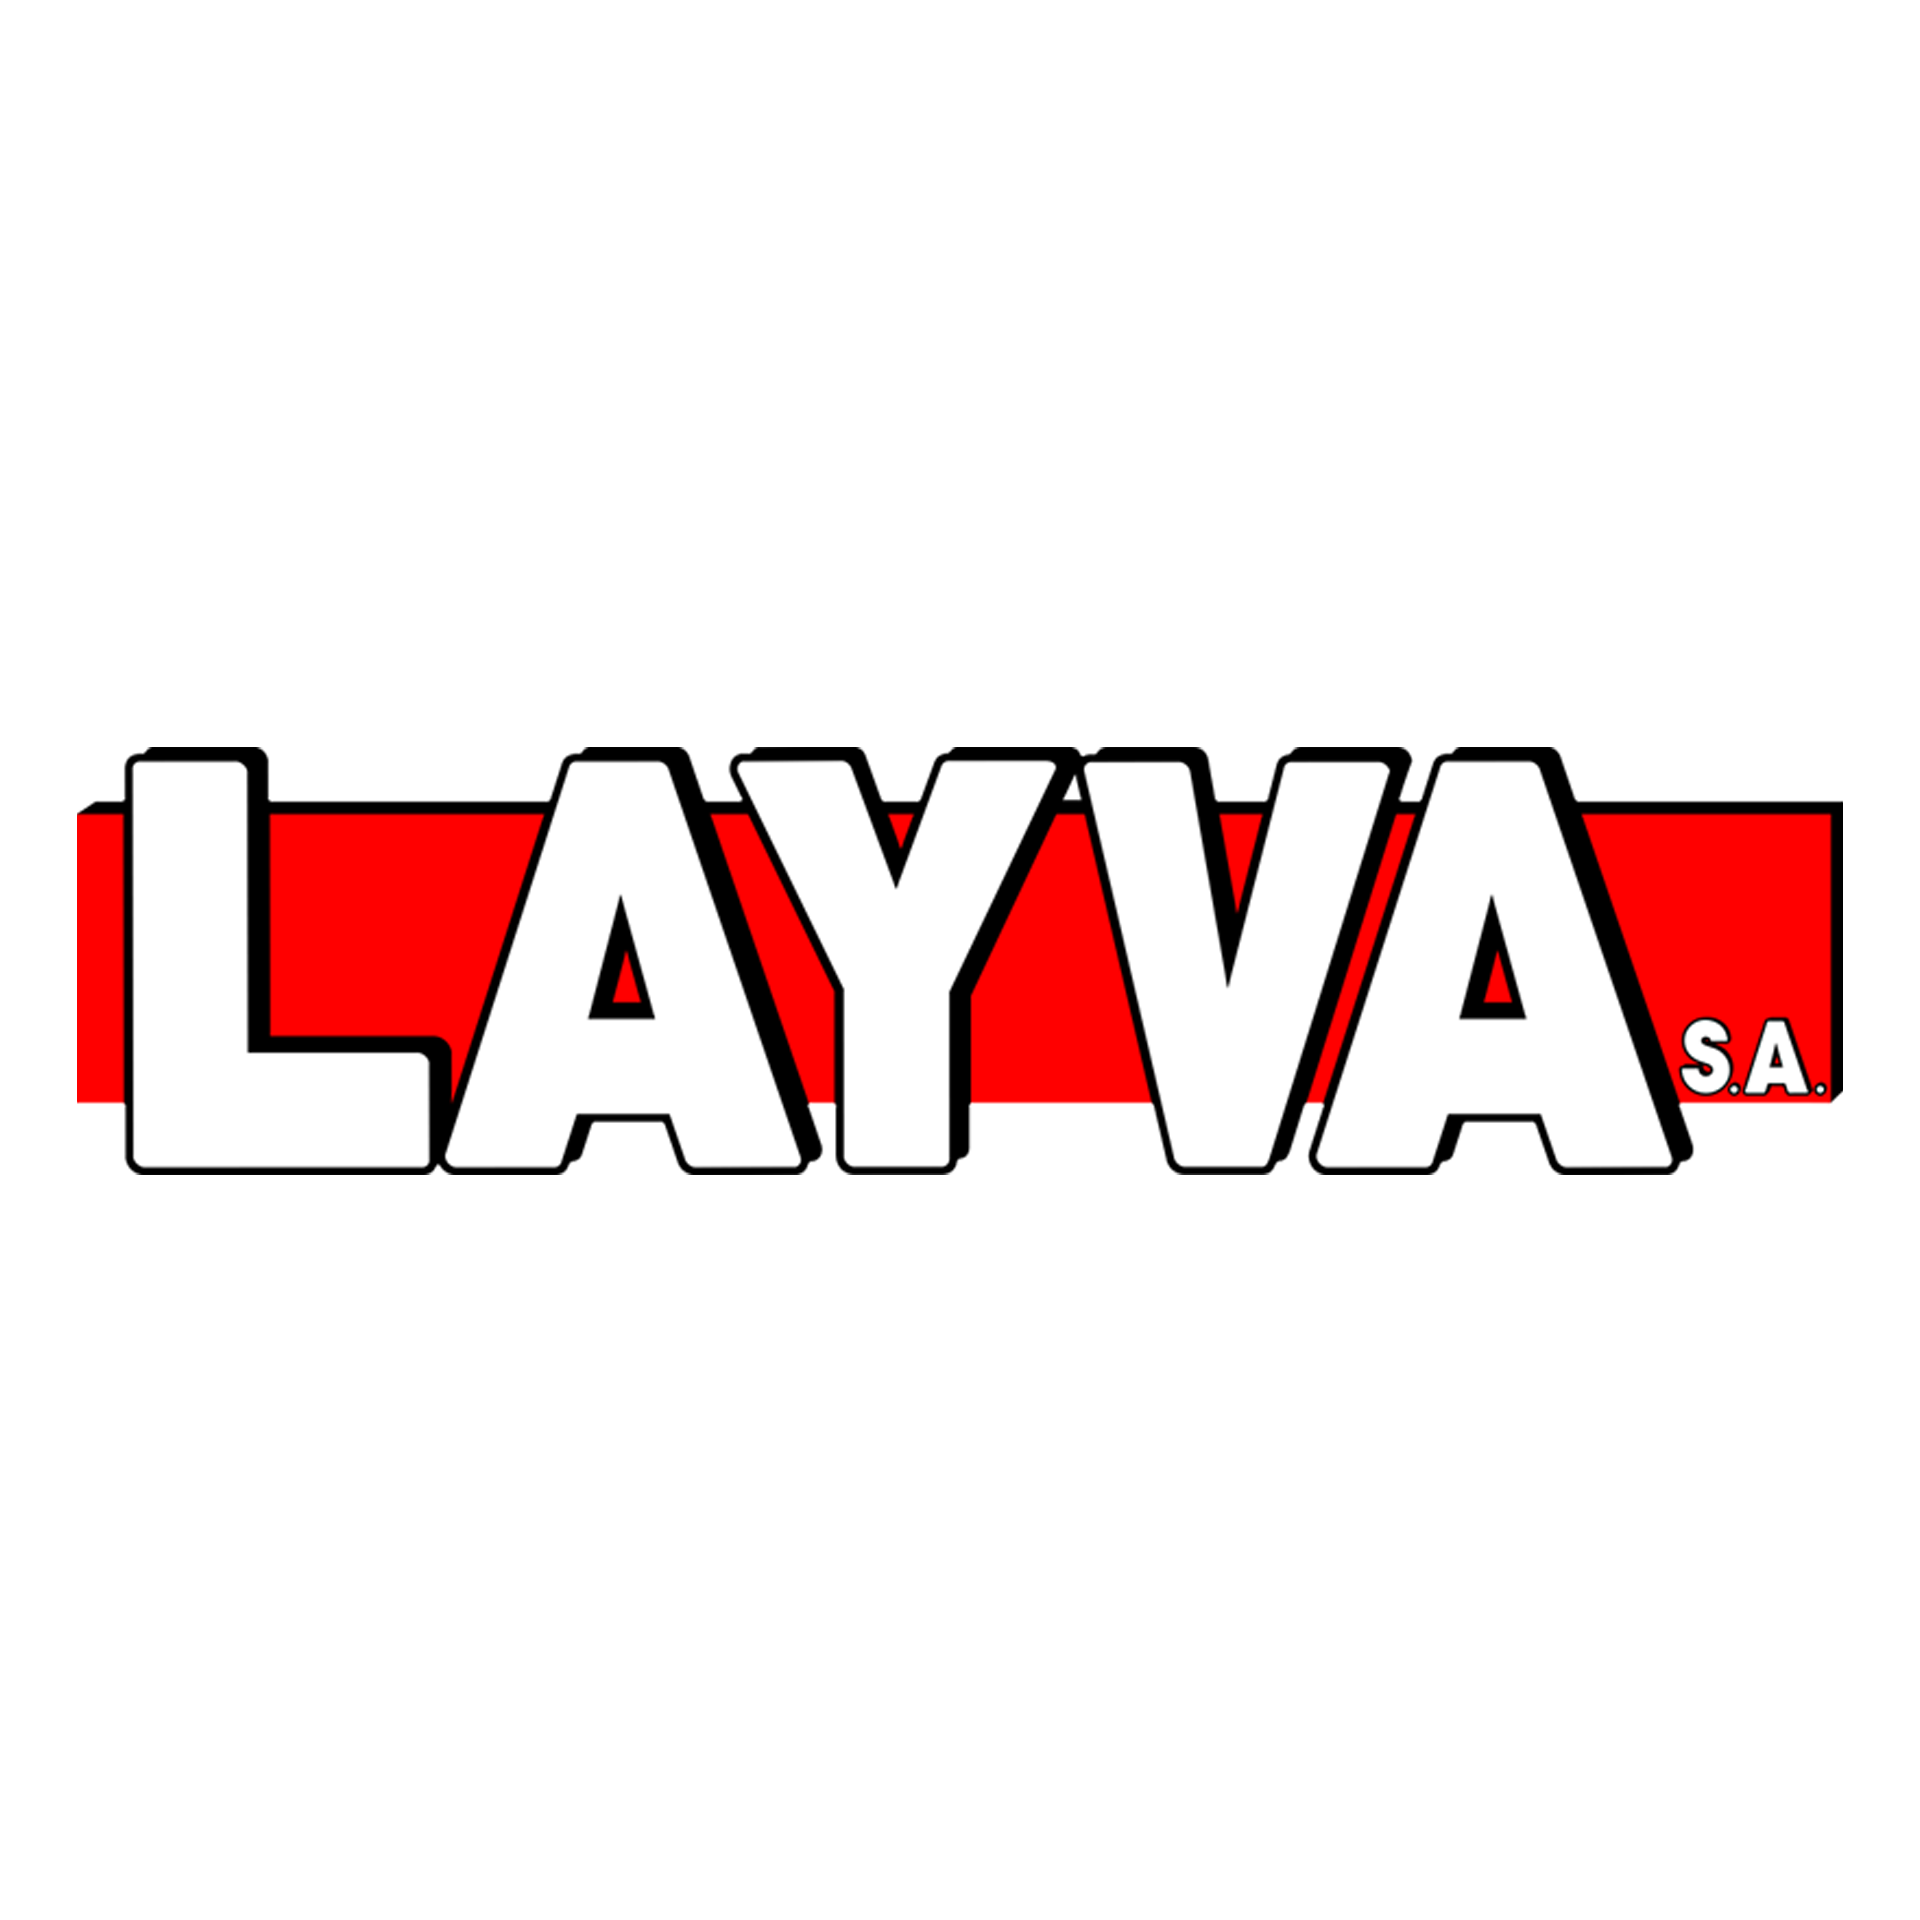 (c) Layva.com.uy